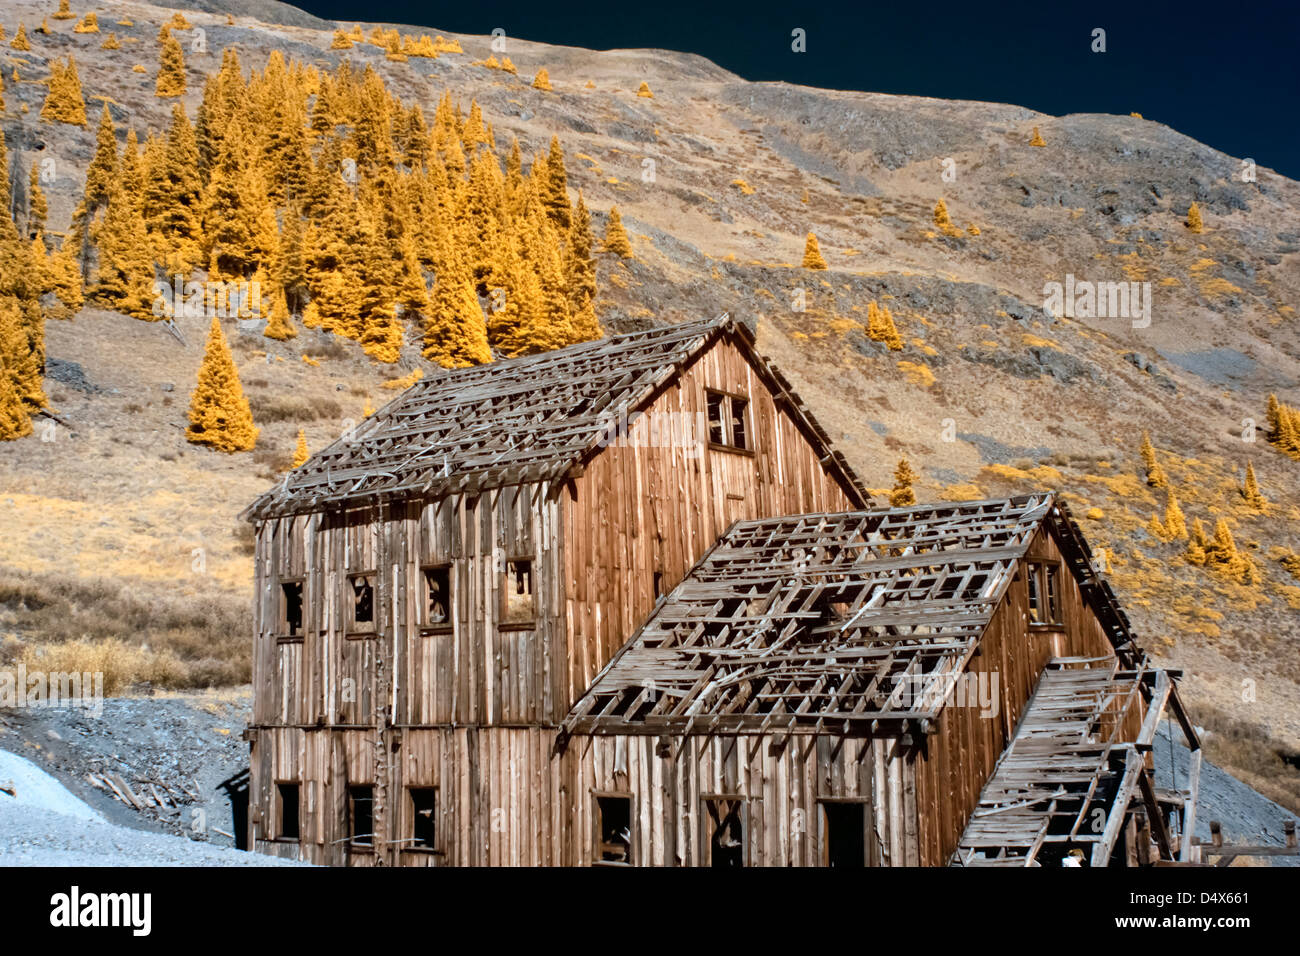 Animas Forks ville fantôme et Columbus gold mine en boucle Alpine, Colorado, USA Banque D'Images